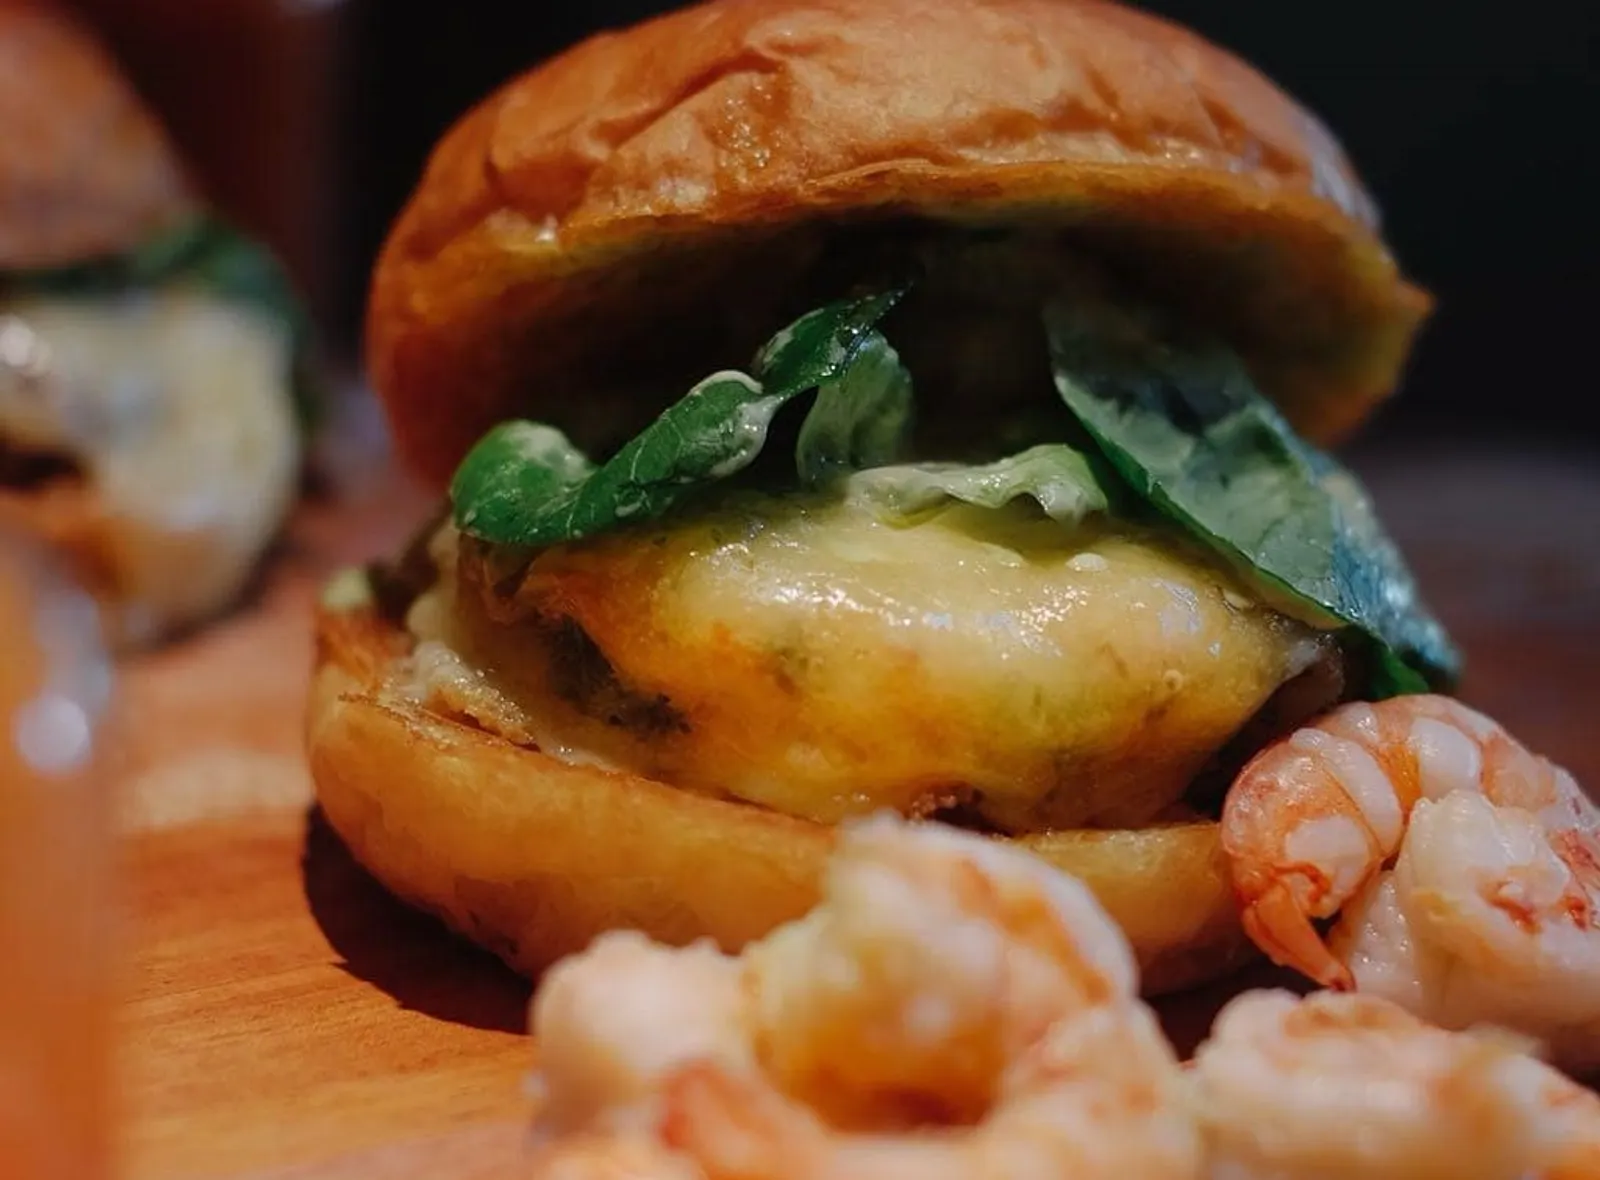 Review: Le Burger, Restoran Amerika di Pusat Kota Jakarta